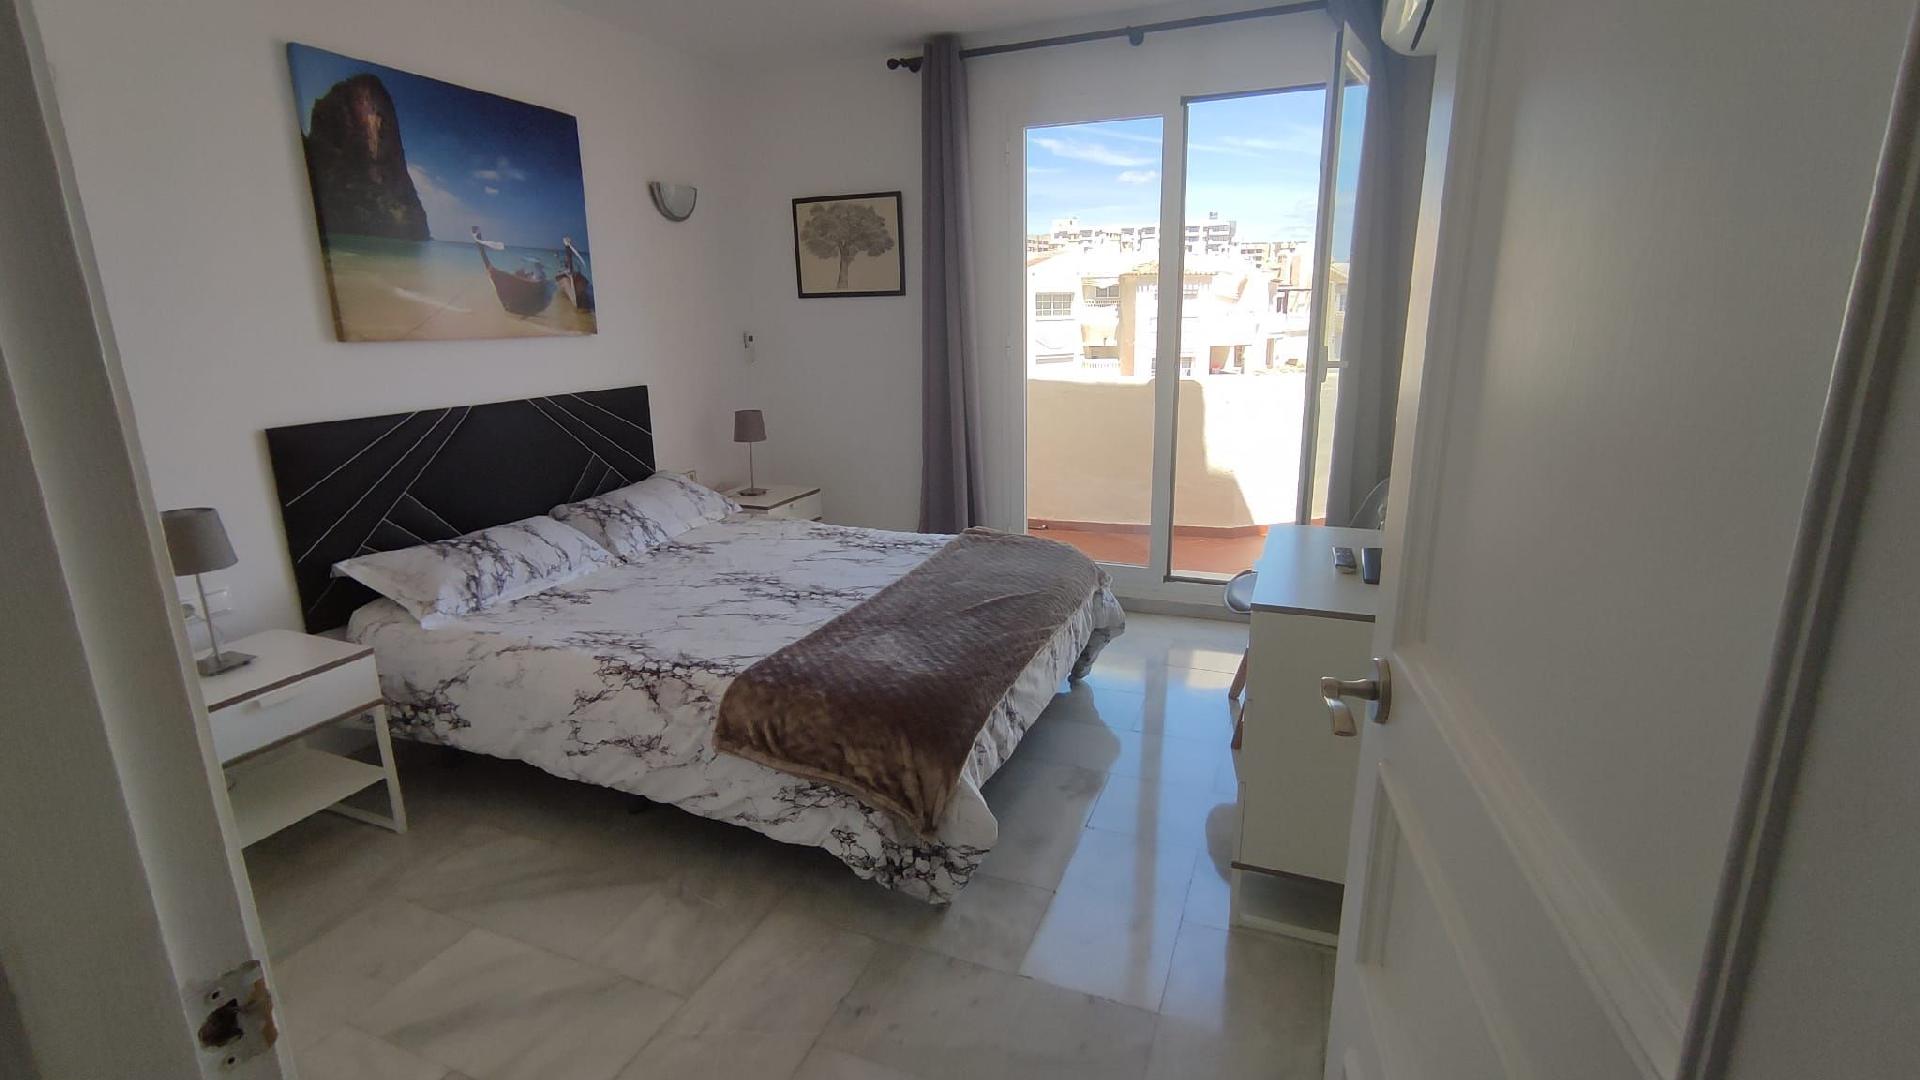 Ferienwohnung für 4 Personen ca. 65 m² i Ferienwohnung in Spanien